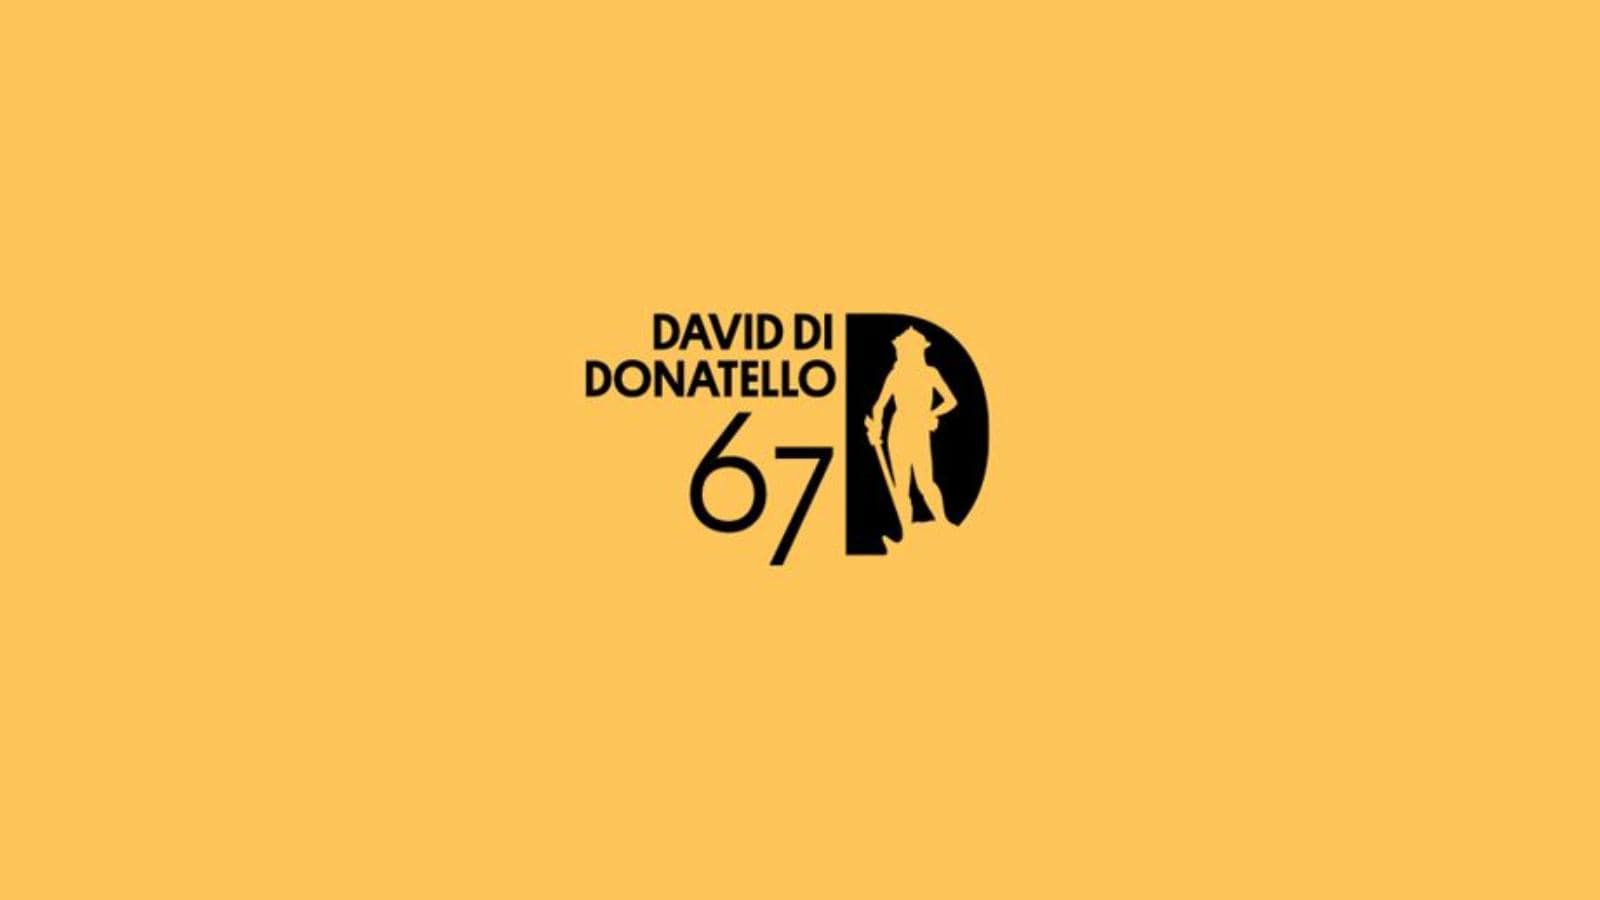 David di Donatello 2022